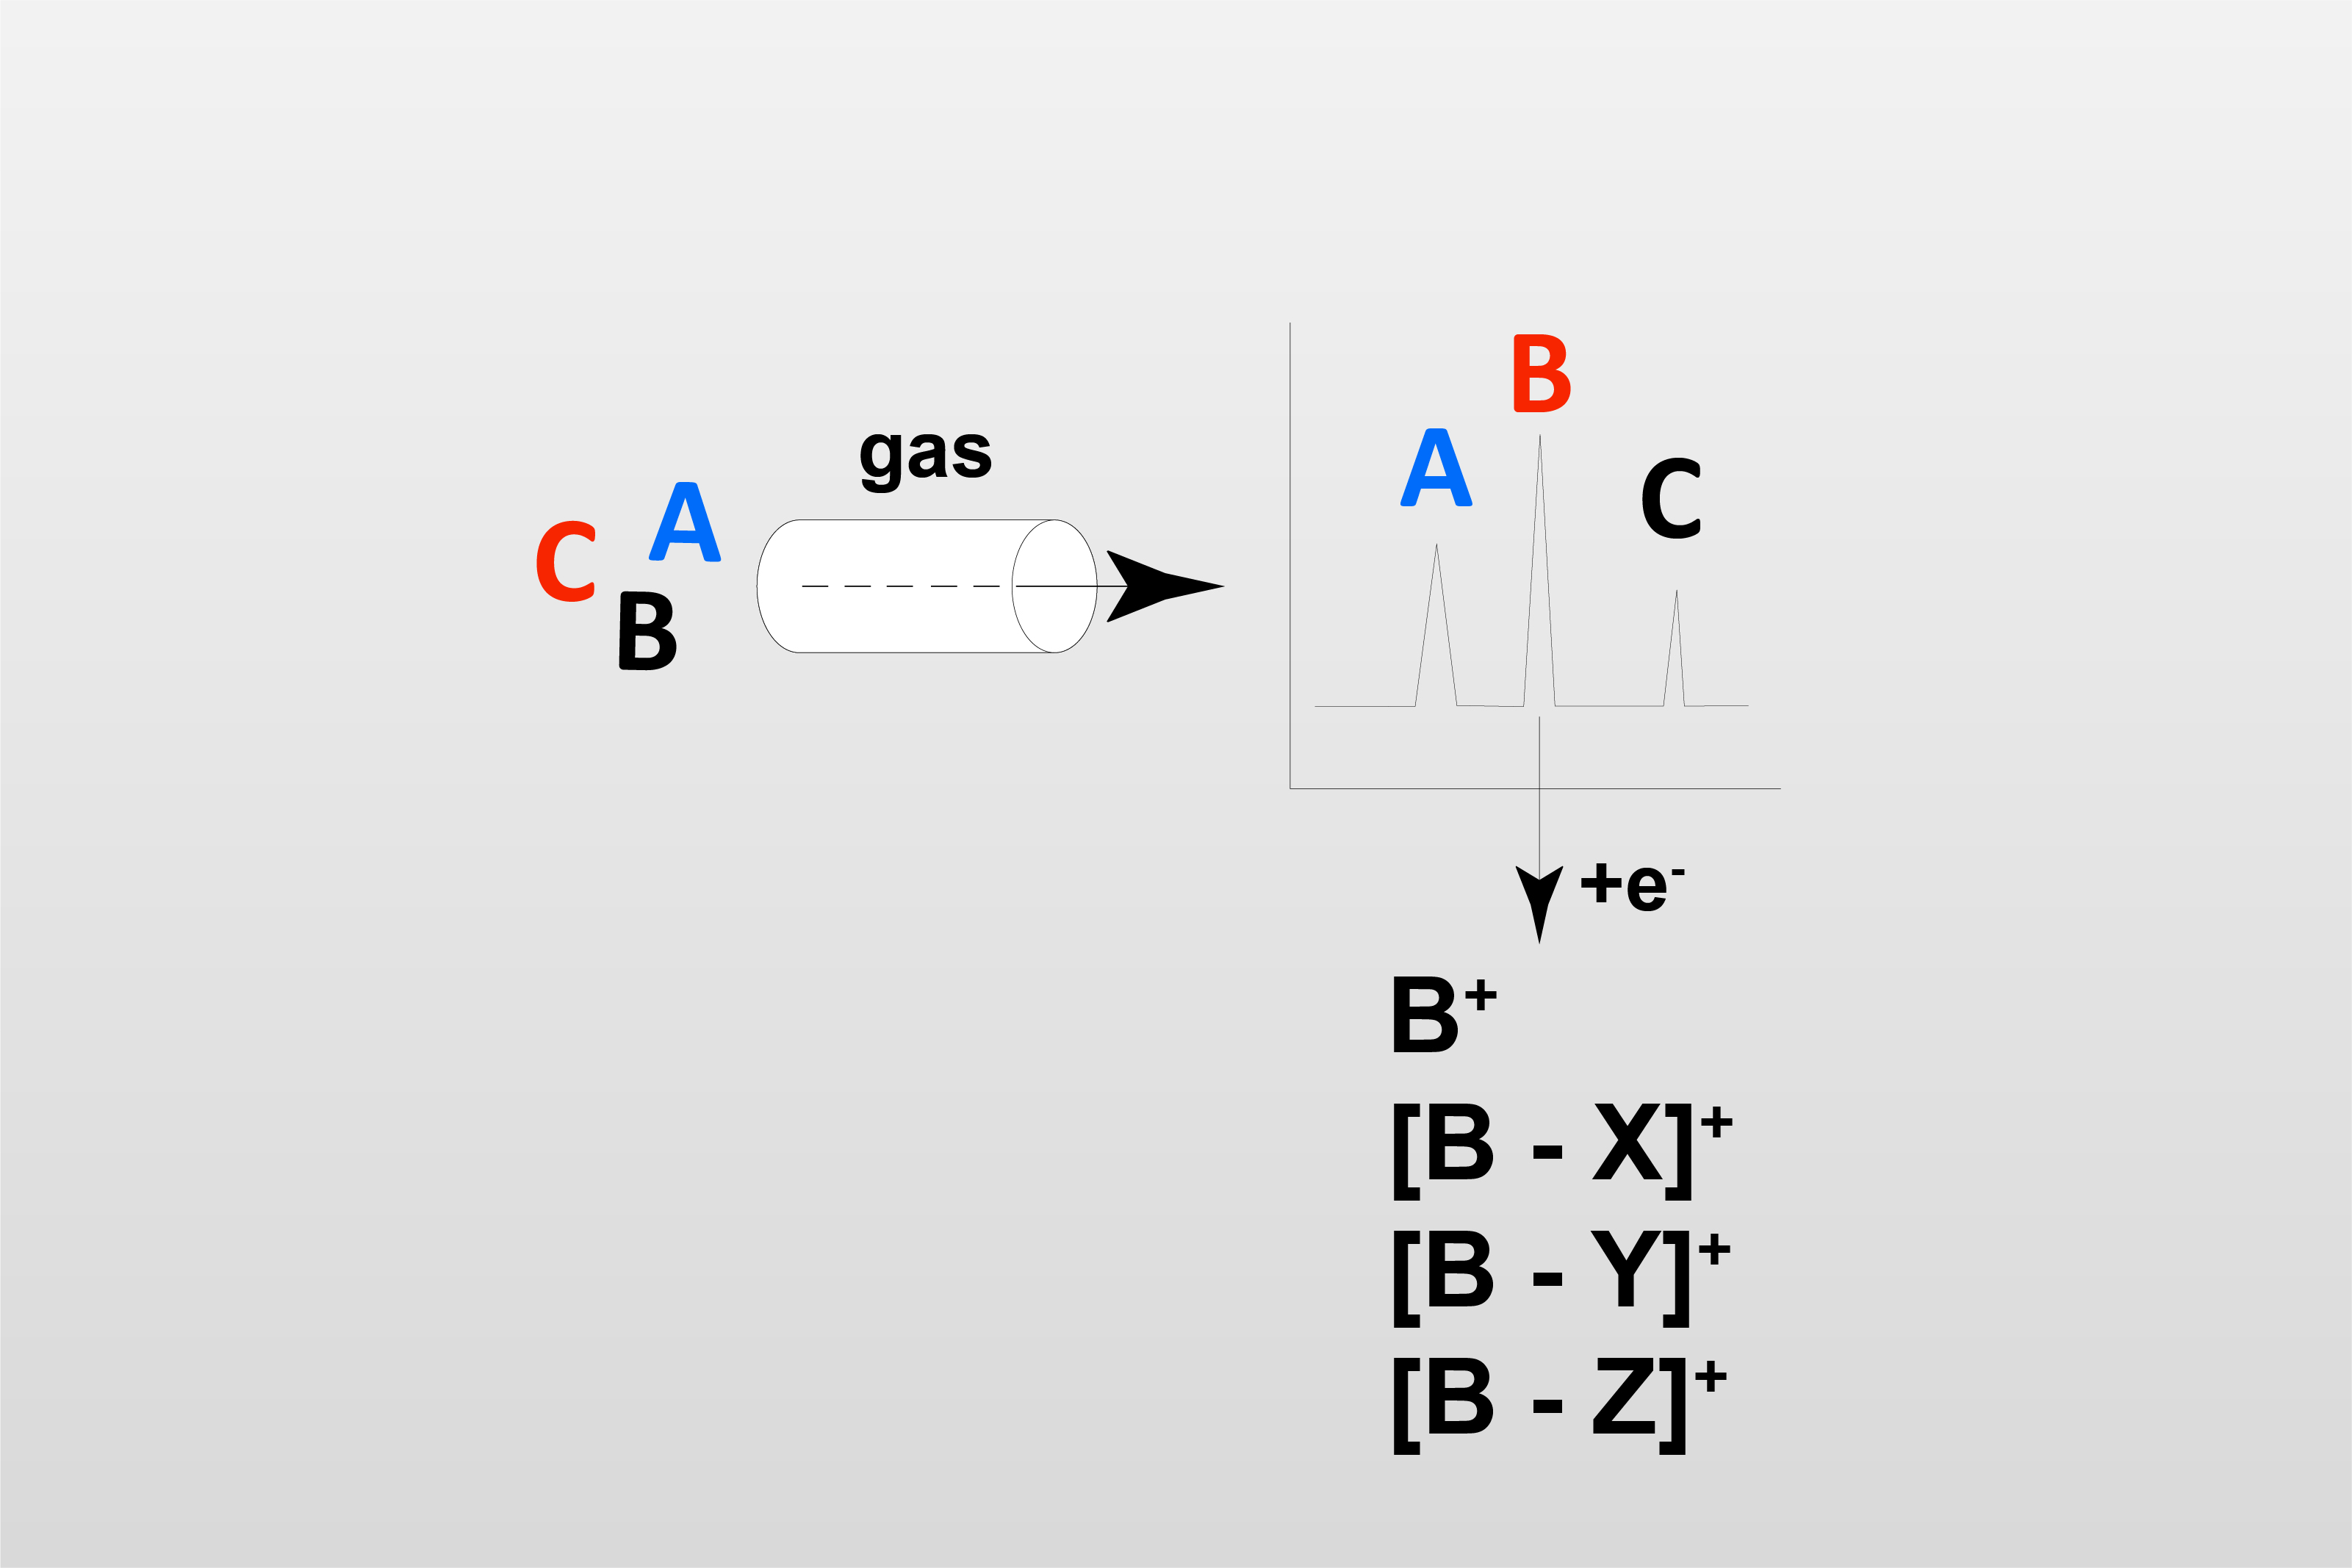 气相色谱-质谱法 (GC-MS)